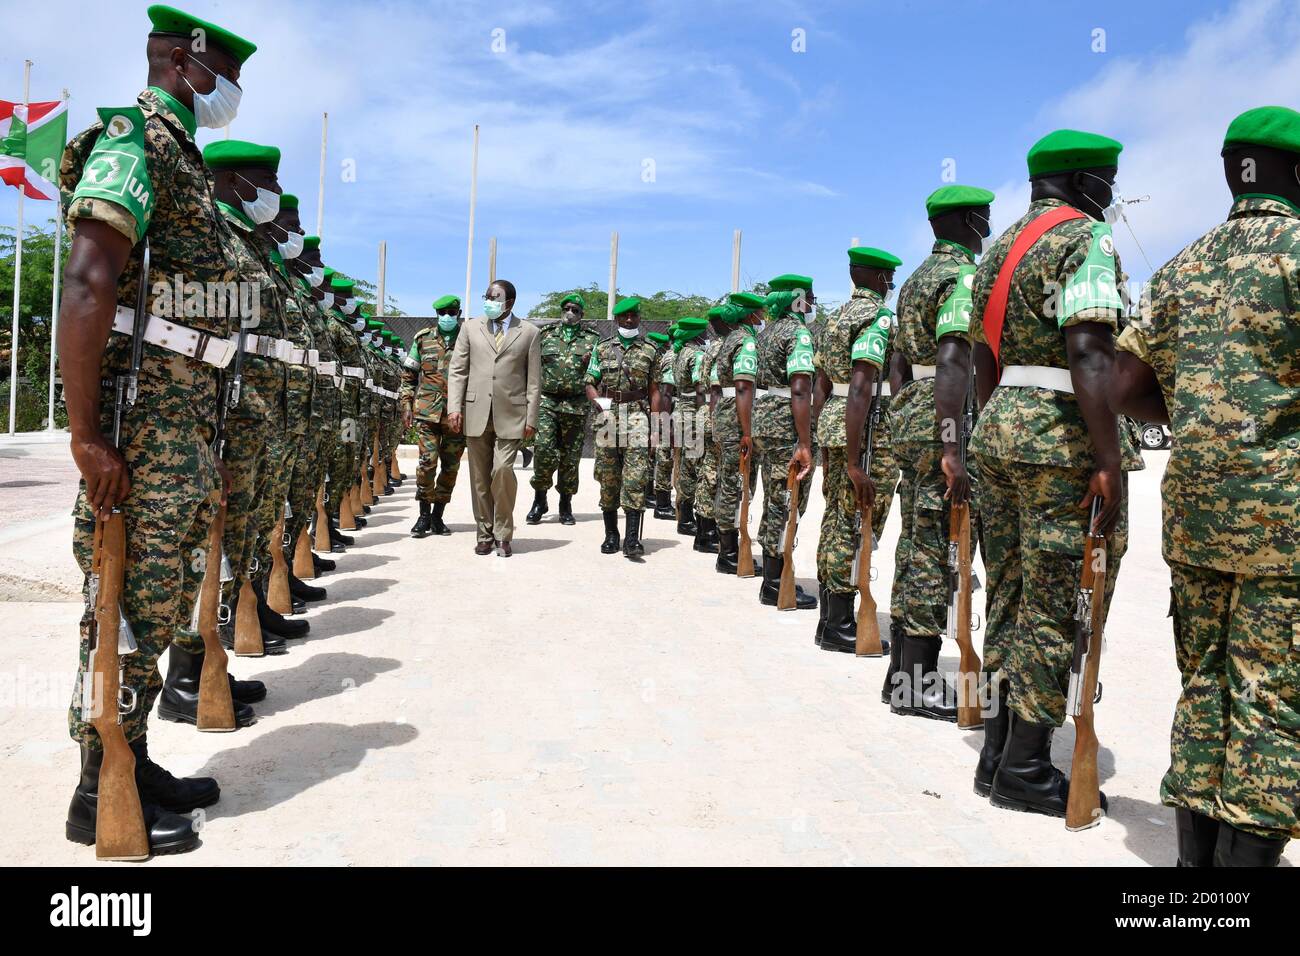 El Embajador Francisco Madeira, Representante Especial del Presidente de la Comisión de la Unión Africana para Somalia, inspecciona a un guardia de honor durante una ceremonia de entrega celebrada en Mogadishu (Somalia) el 31 de agosto de 2020. Foto de stock